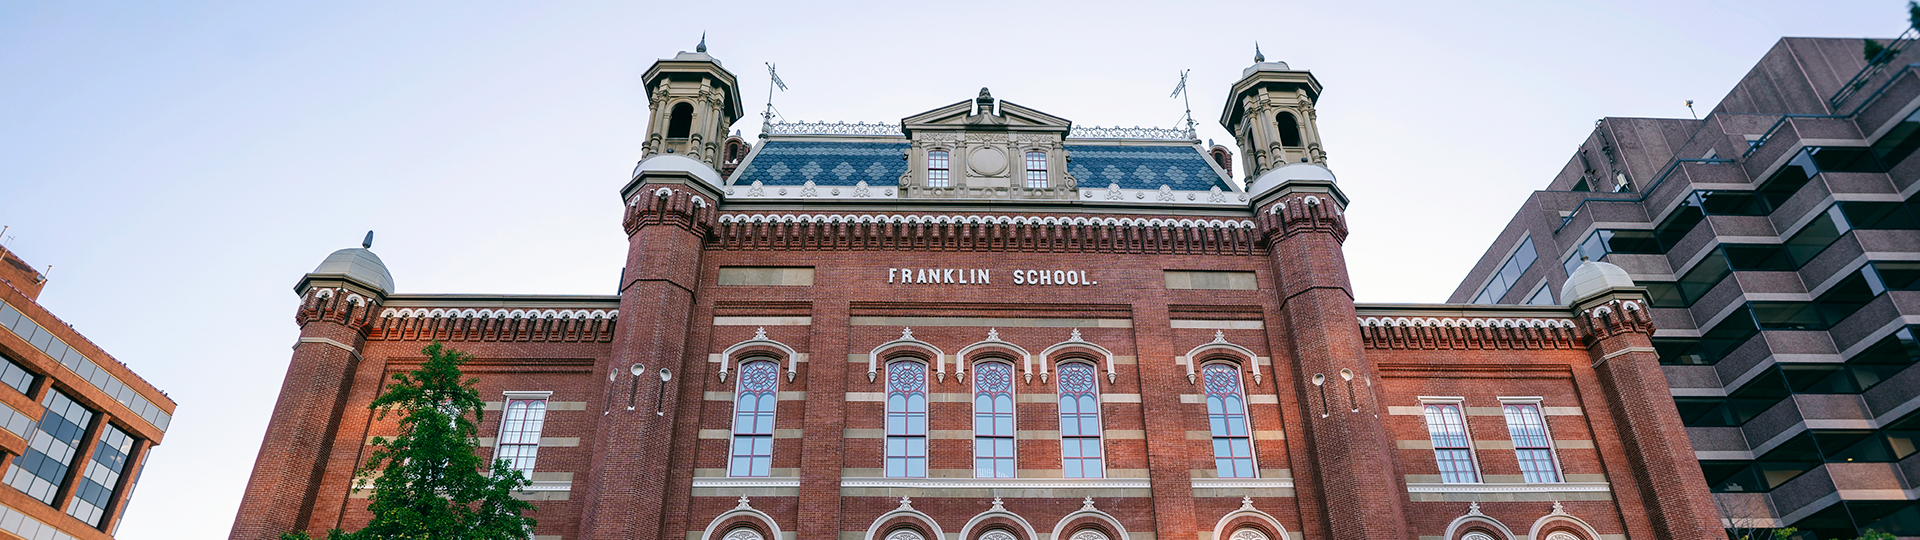 Franklin School, el hogar del museo Planet Word